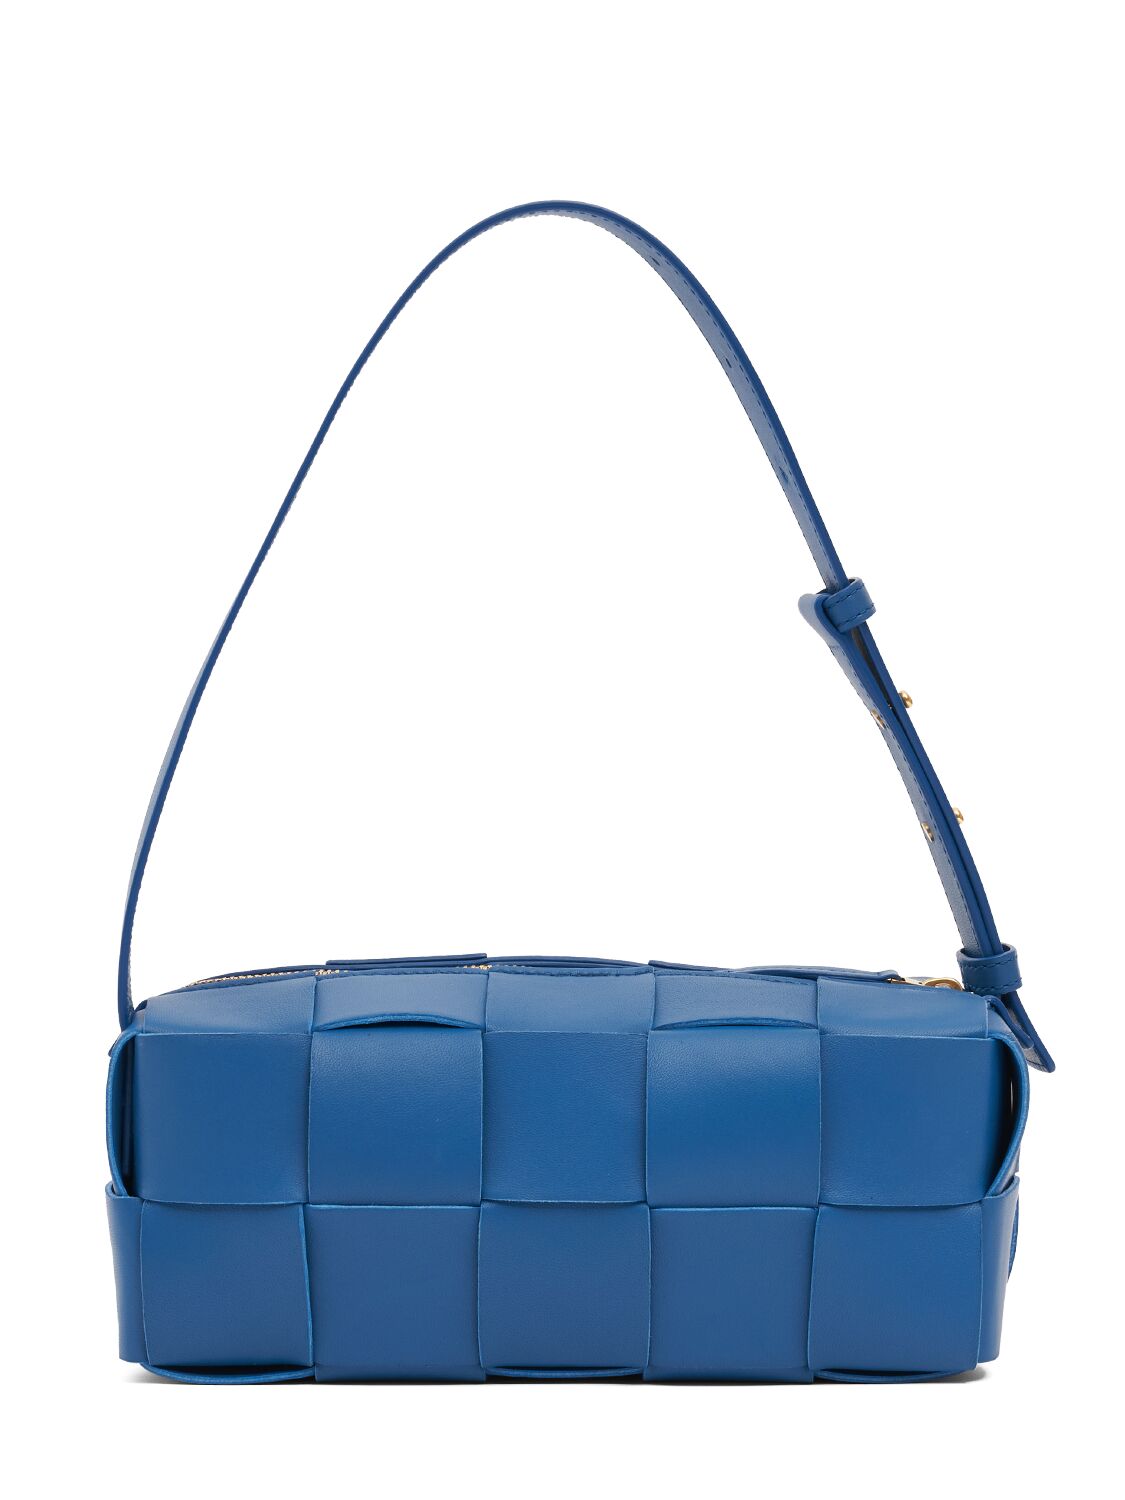 Image of Brick Leather Shoulder Bag